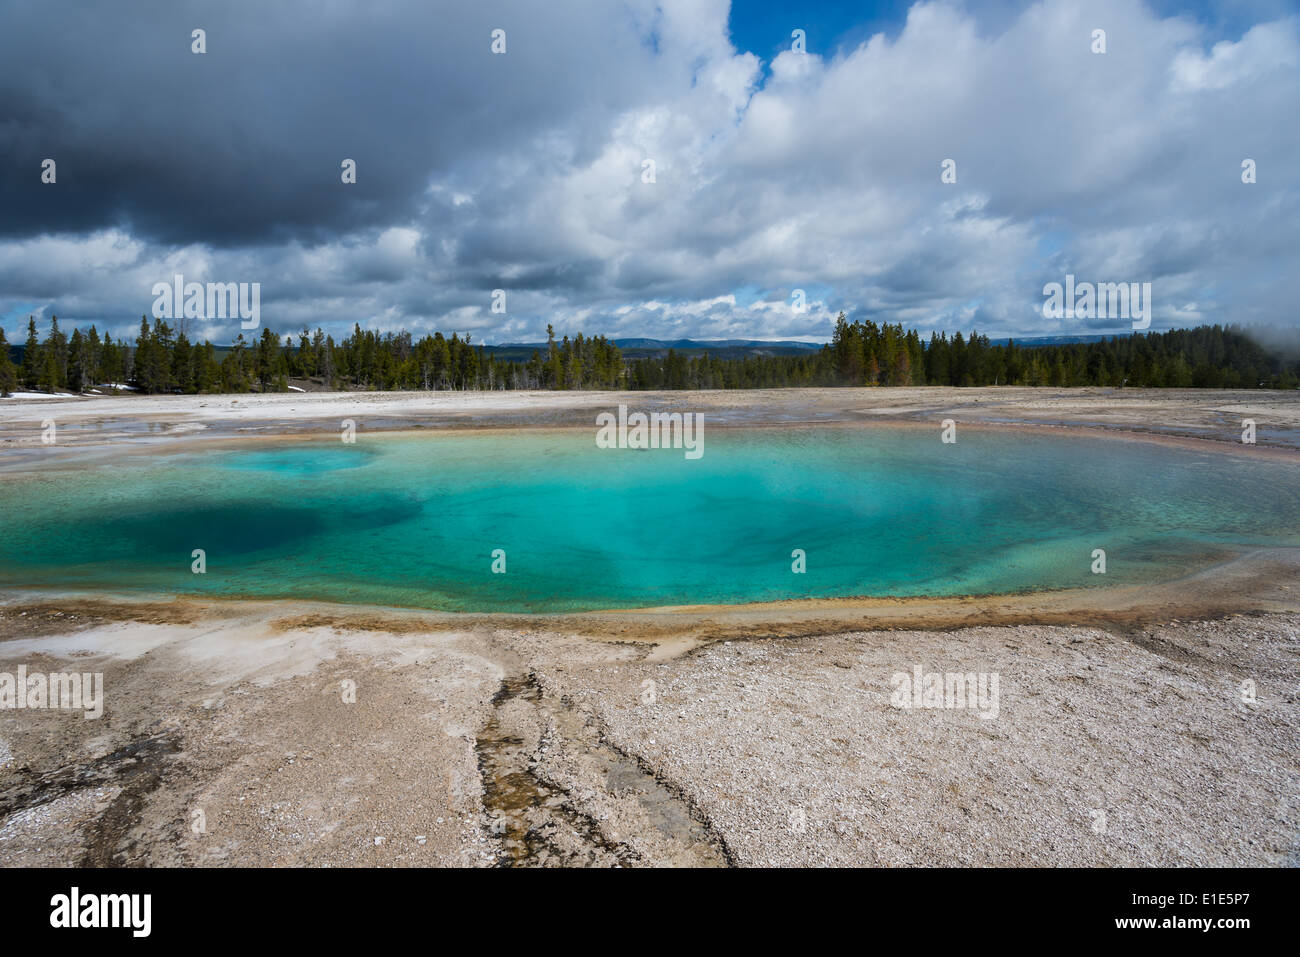 Una bellissima piscina di acqua blu a una primavera calda. Parco Nazionale di Yellowstone, Wyoming negli Stati Uniti. Foto Stock